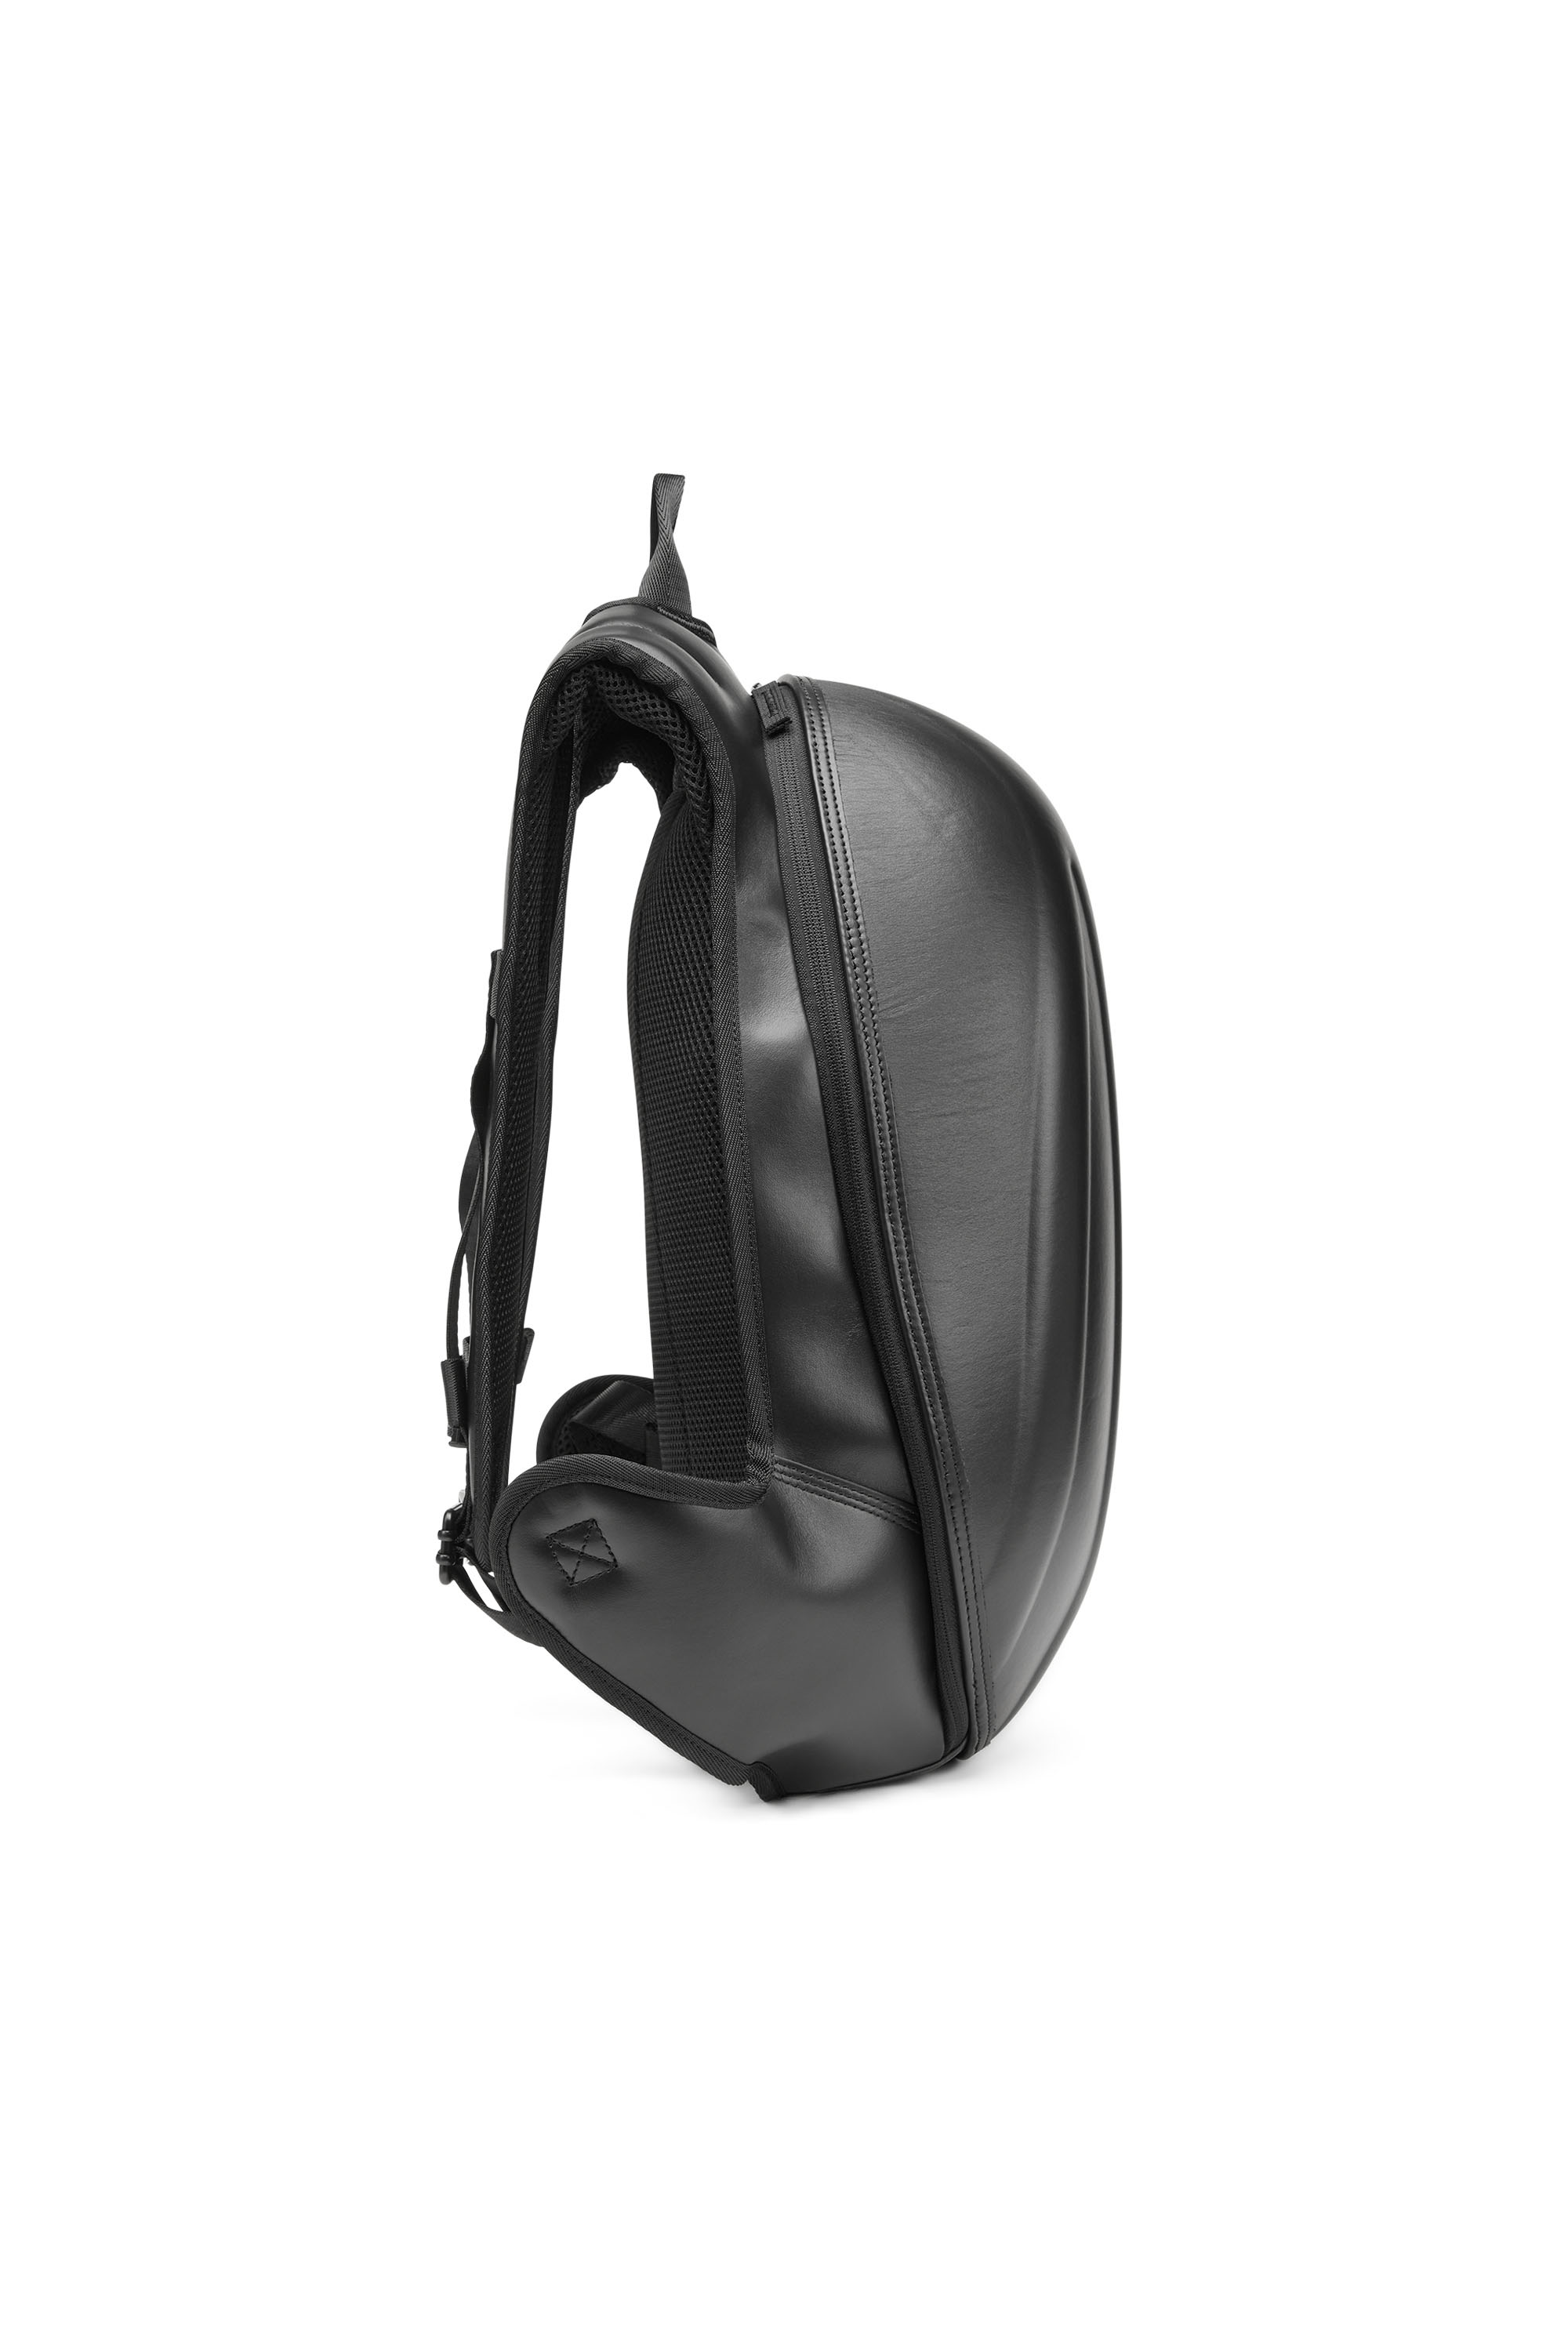 Diesel - 1DR-POD BACKPACK, Man 1DR-Pod Backpack - Hard shell leather backpack in Black - Image 3